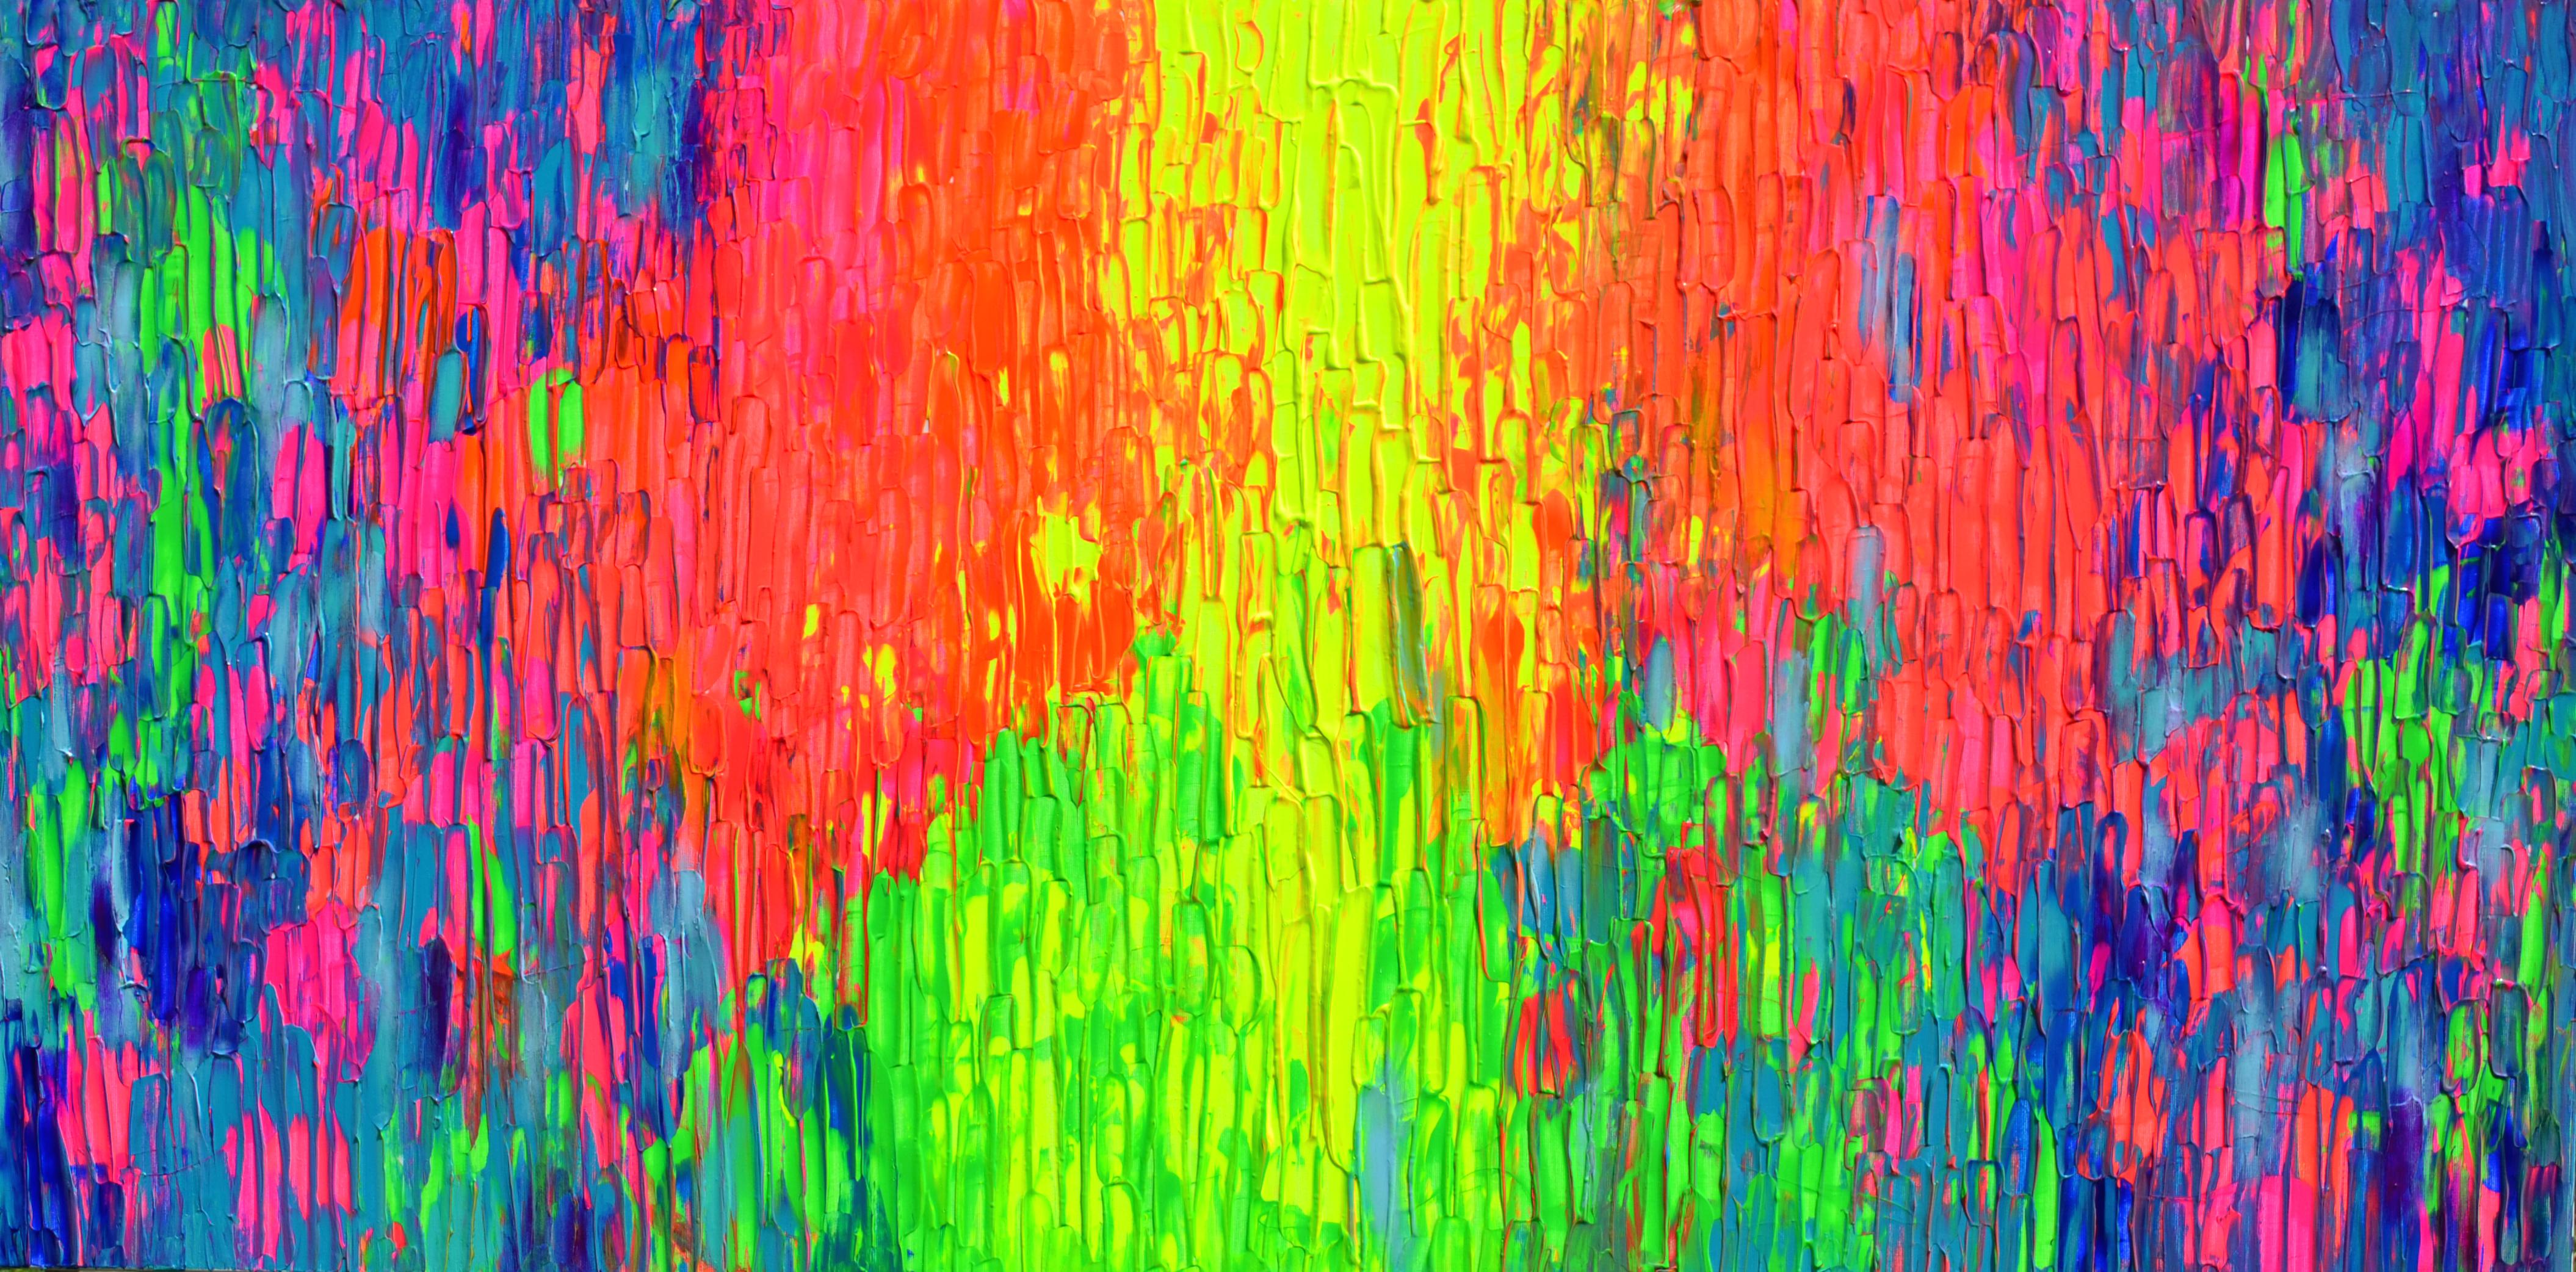 Happy Gypsy Dance 23 Großes Pallet-Messer Texturiertes, farbenfrohes, abstraktes Gemälde